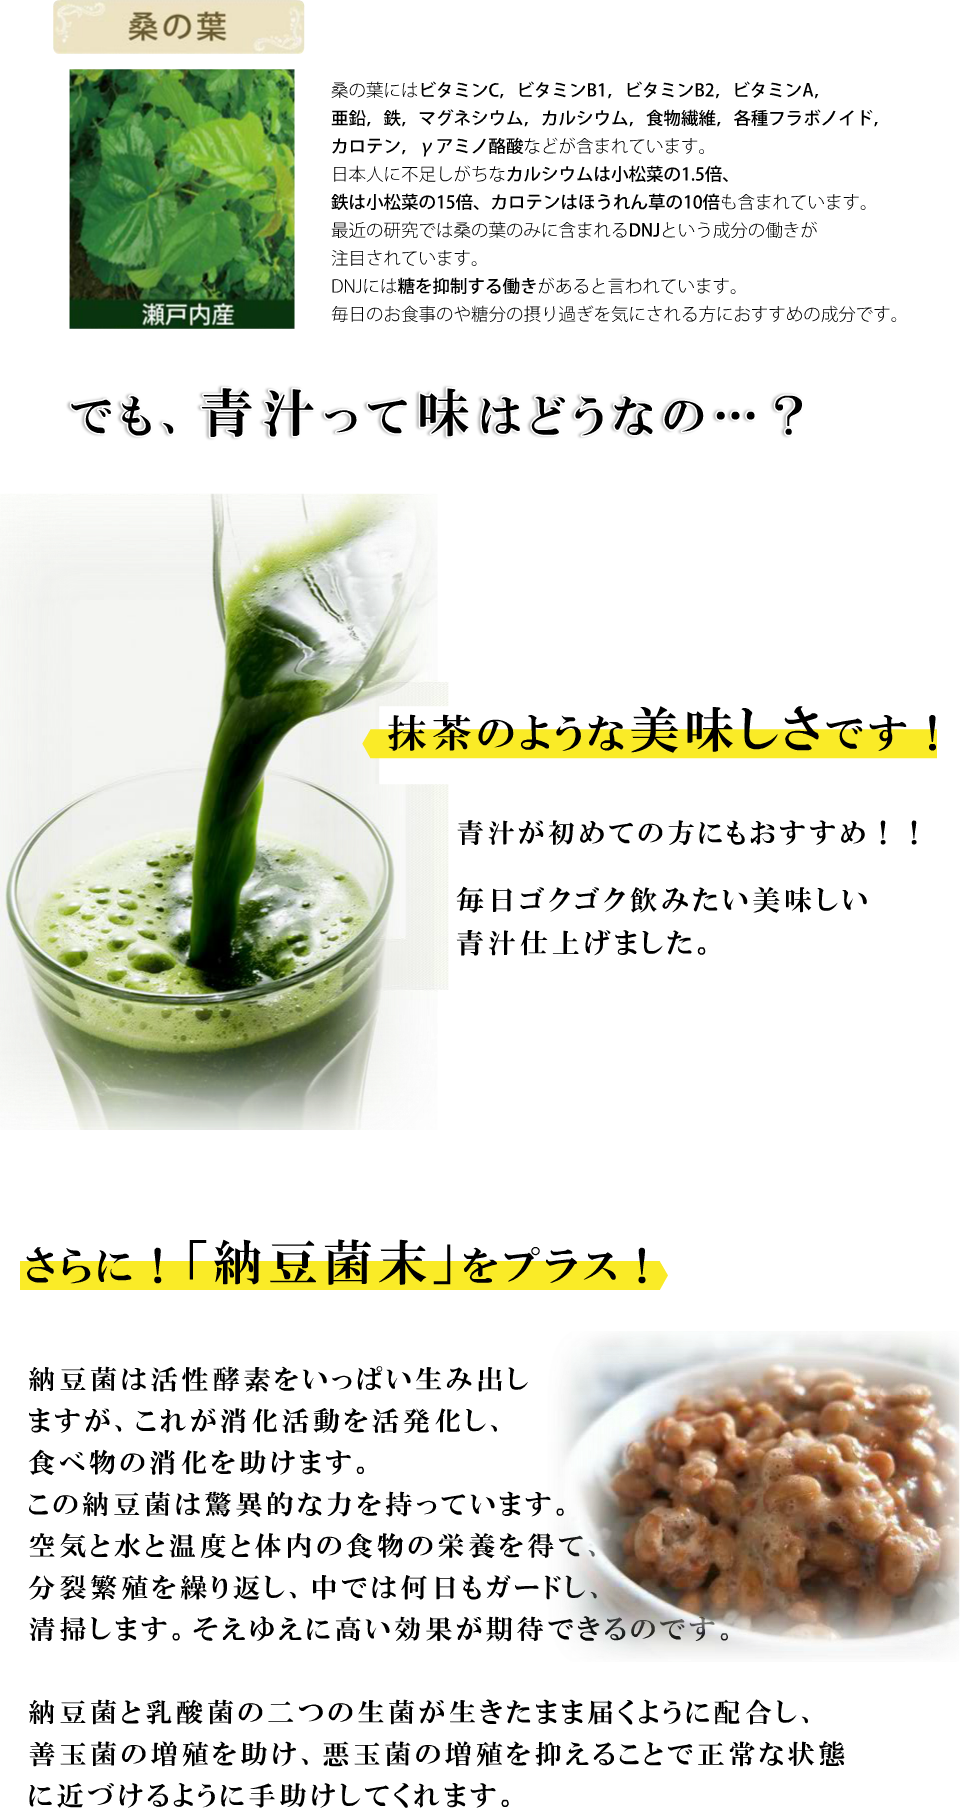 青汁は国産の桑野の葉を使用。甘すぎない青汁は抹茶のような美味しさです。青汁が初めての方にもおすすめ！